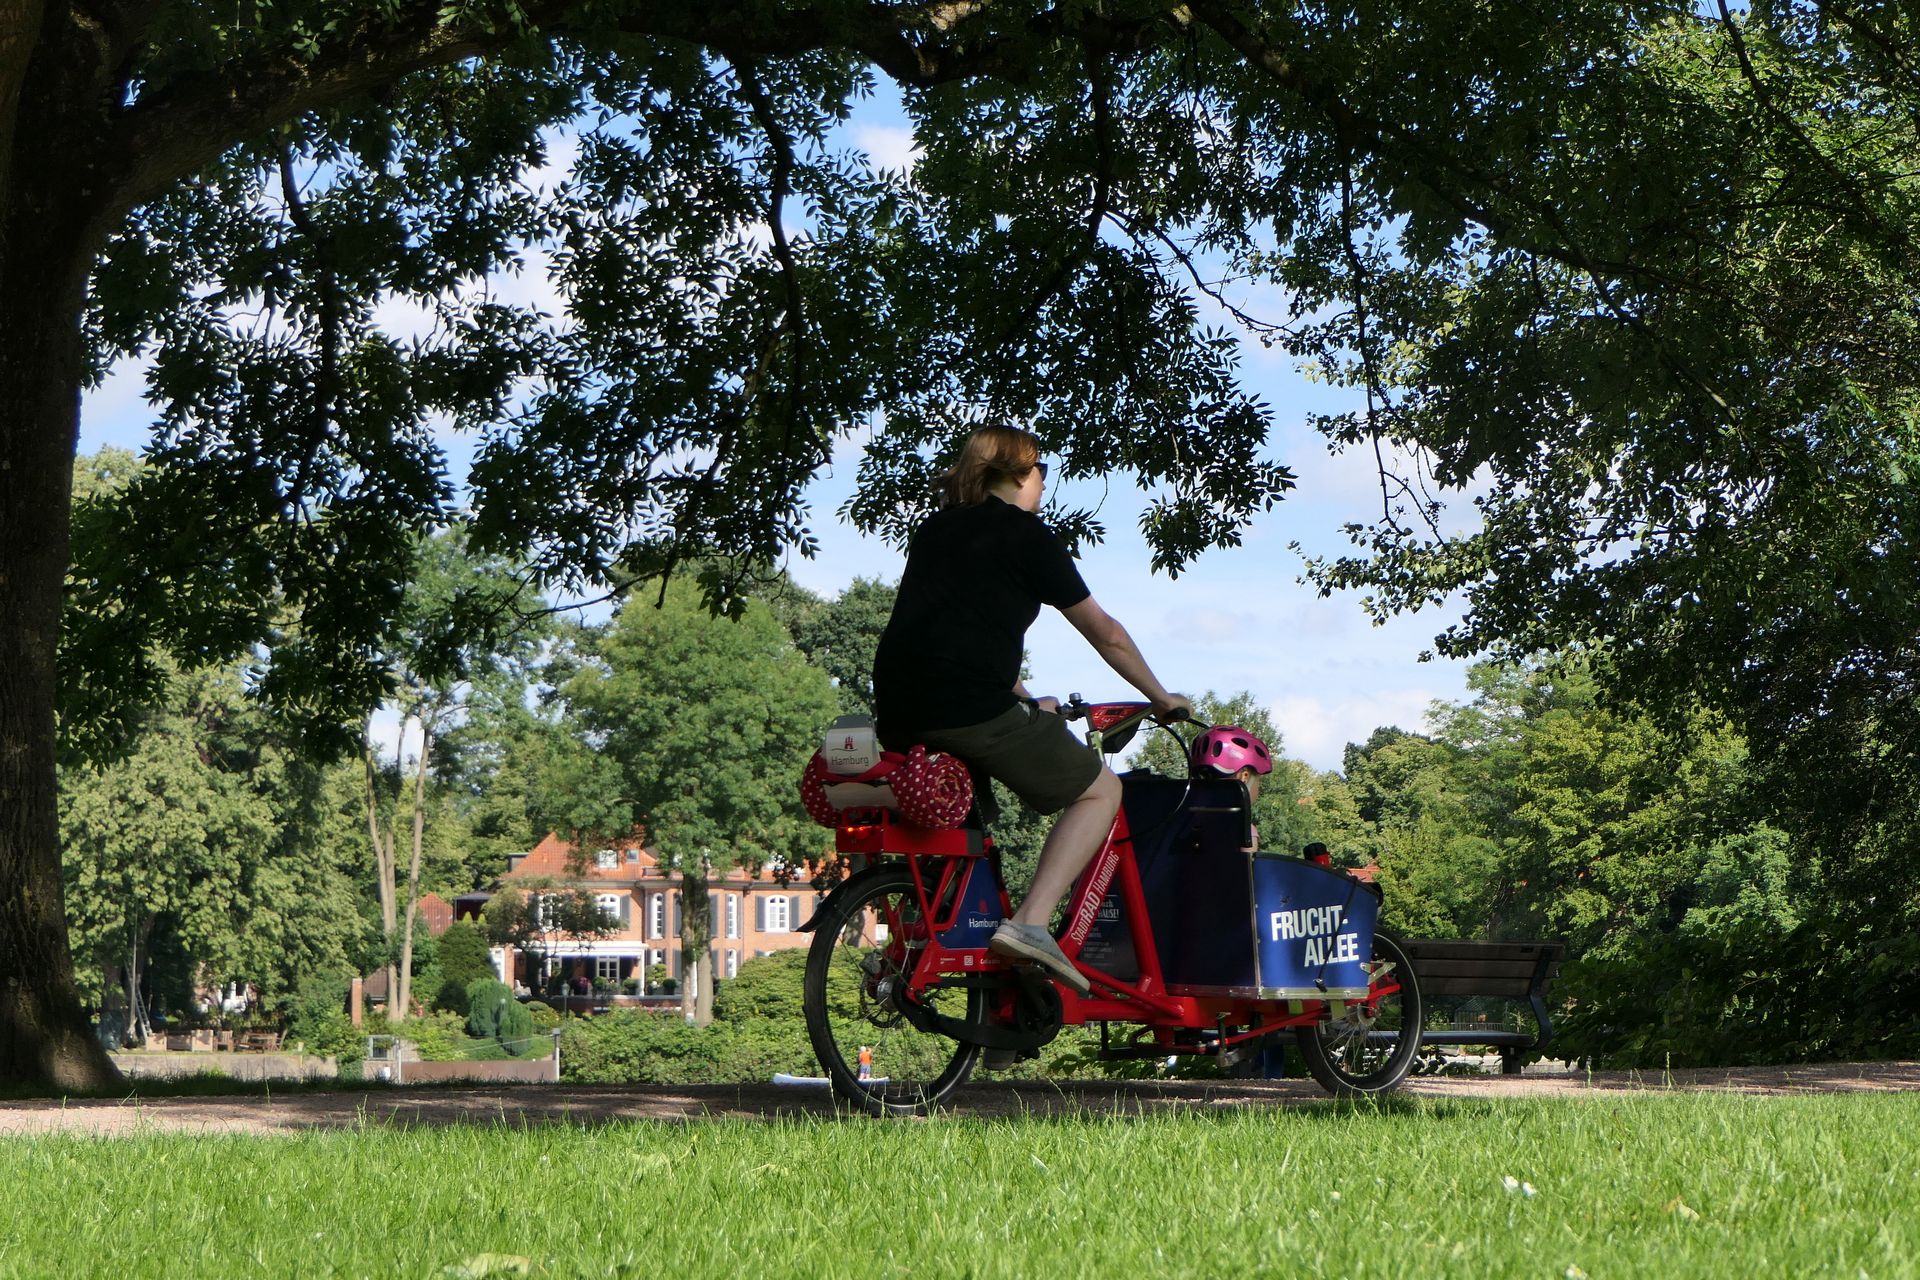 W zachodnioeuropejskich miastach coraz częściej można spotkać rowery cargo. Dzięki wspomaganiu elektrycznego mogą z nich korzystać osoby o całkiem przeciętnej kondycji.